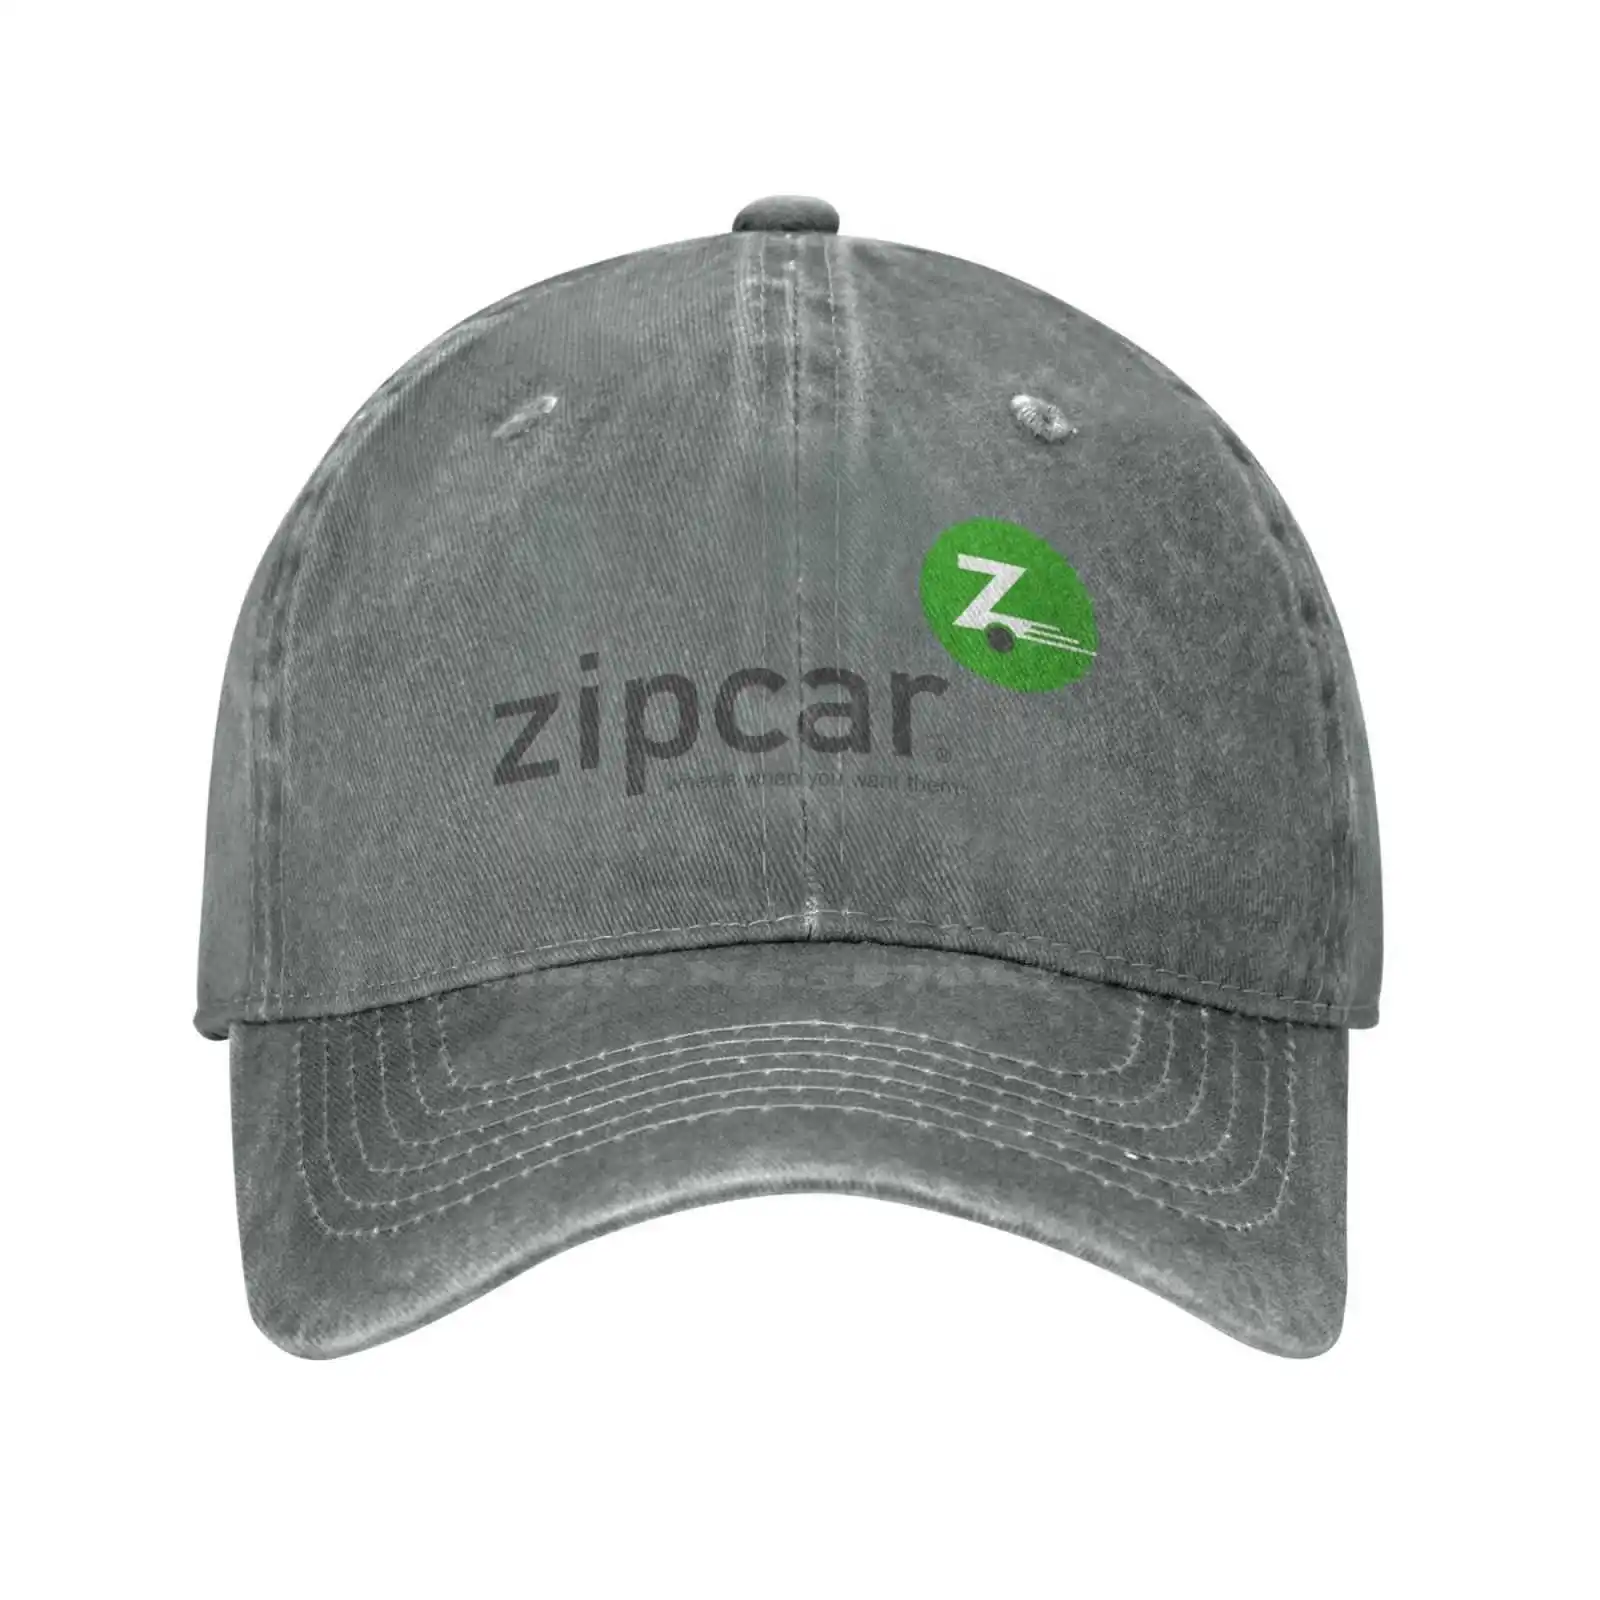 Повседневная джинсовая кепка с графическим принтом логотипа Zipcar, вязаная шапка, бейсболка 4